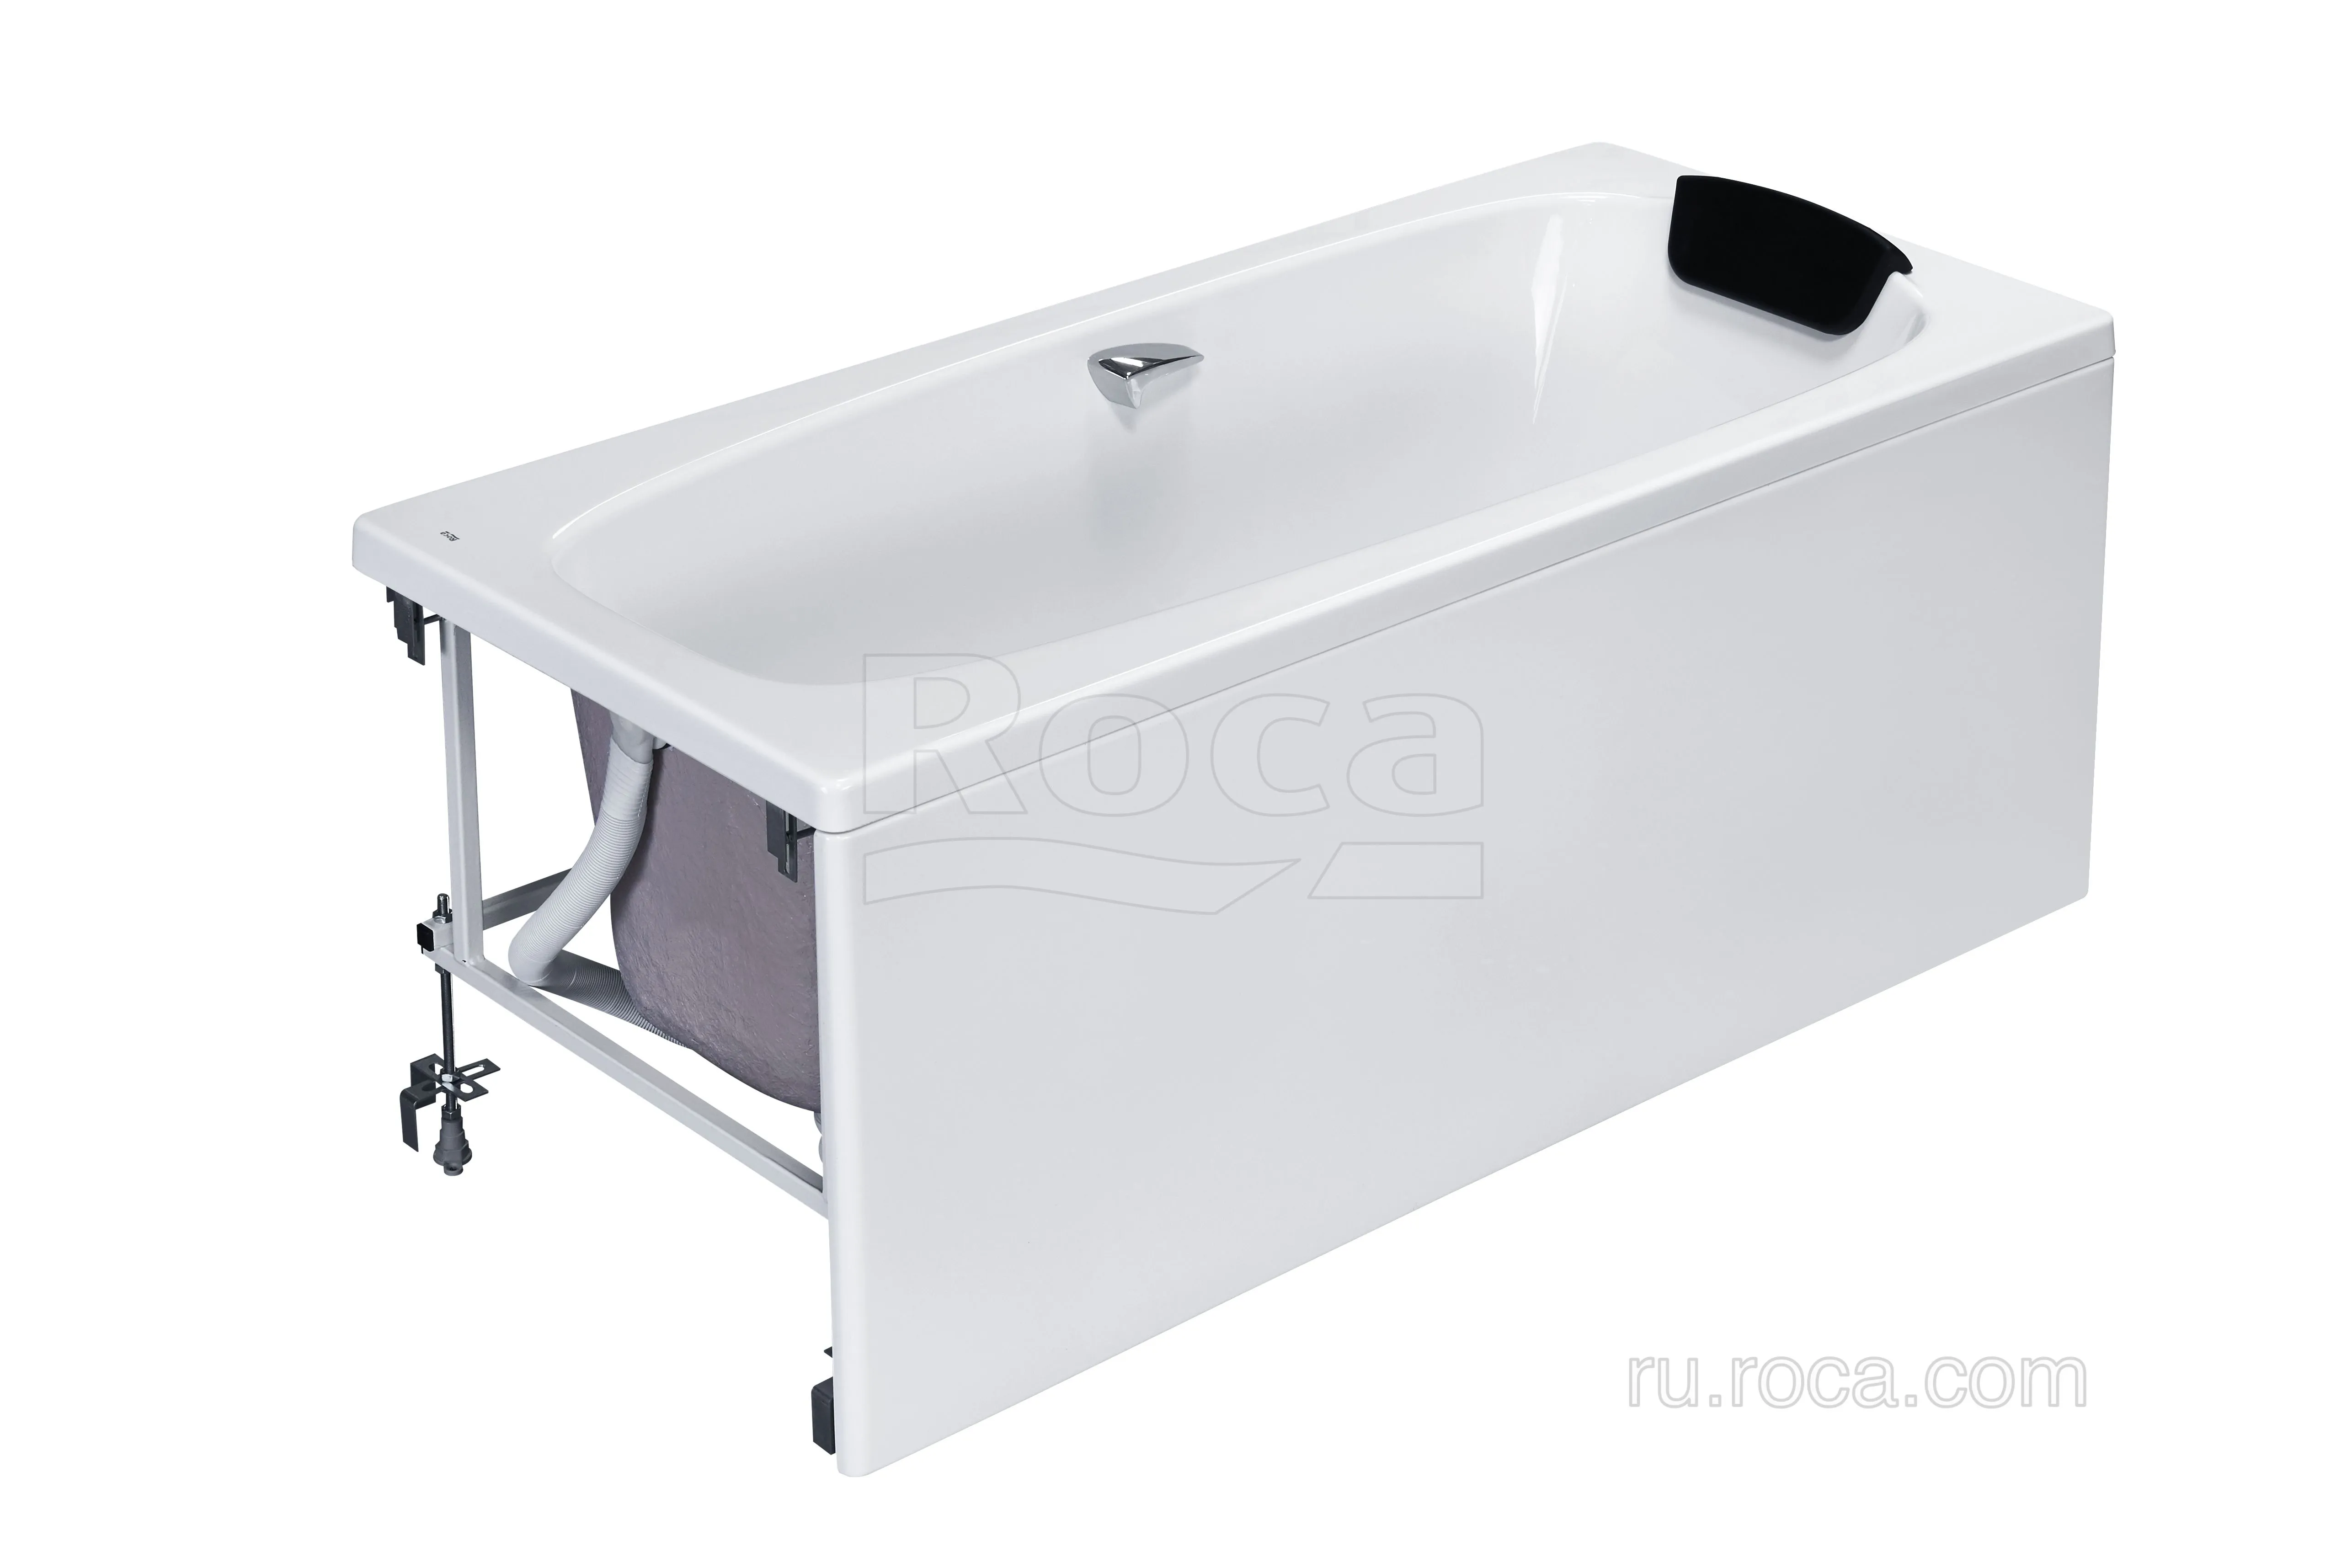 Панель фронтальная для акриловой ванны Sureste 150х70 ZRU9302780 Roca